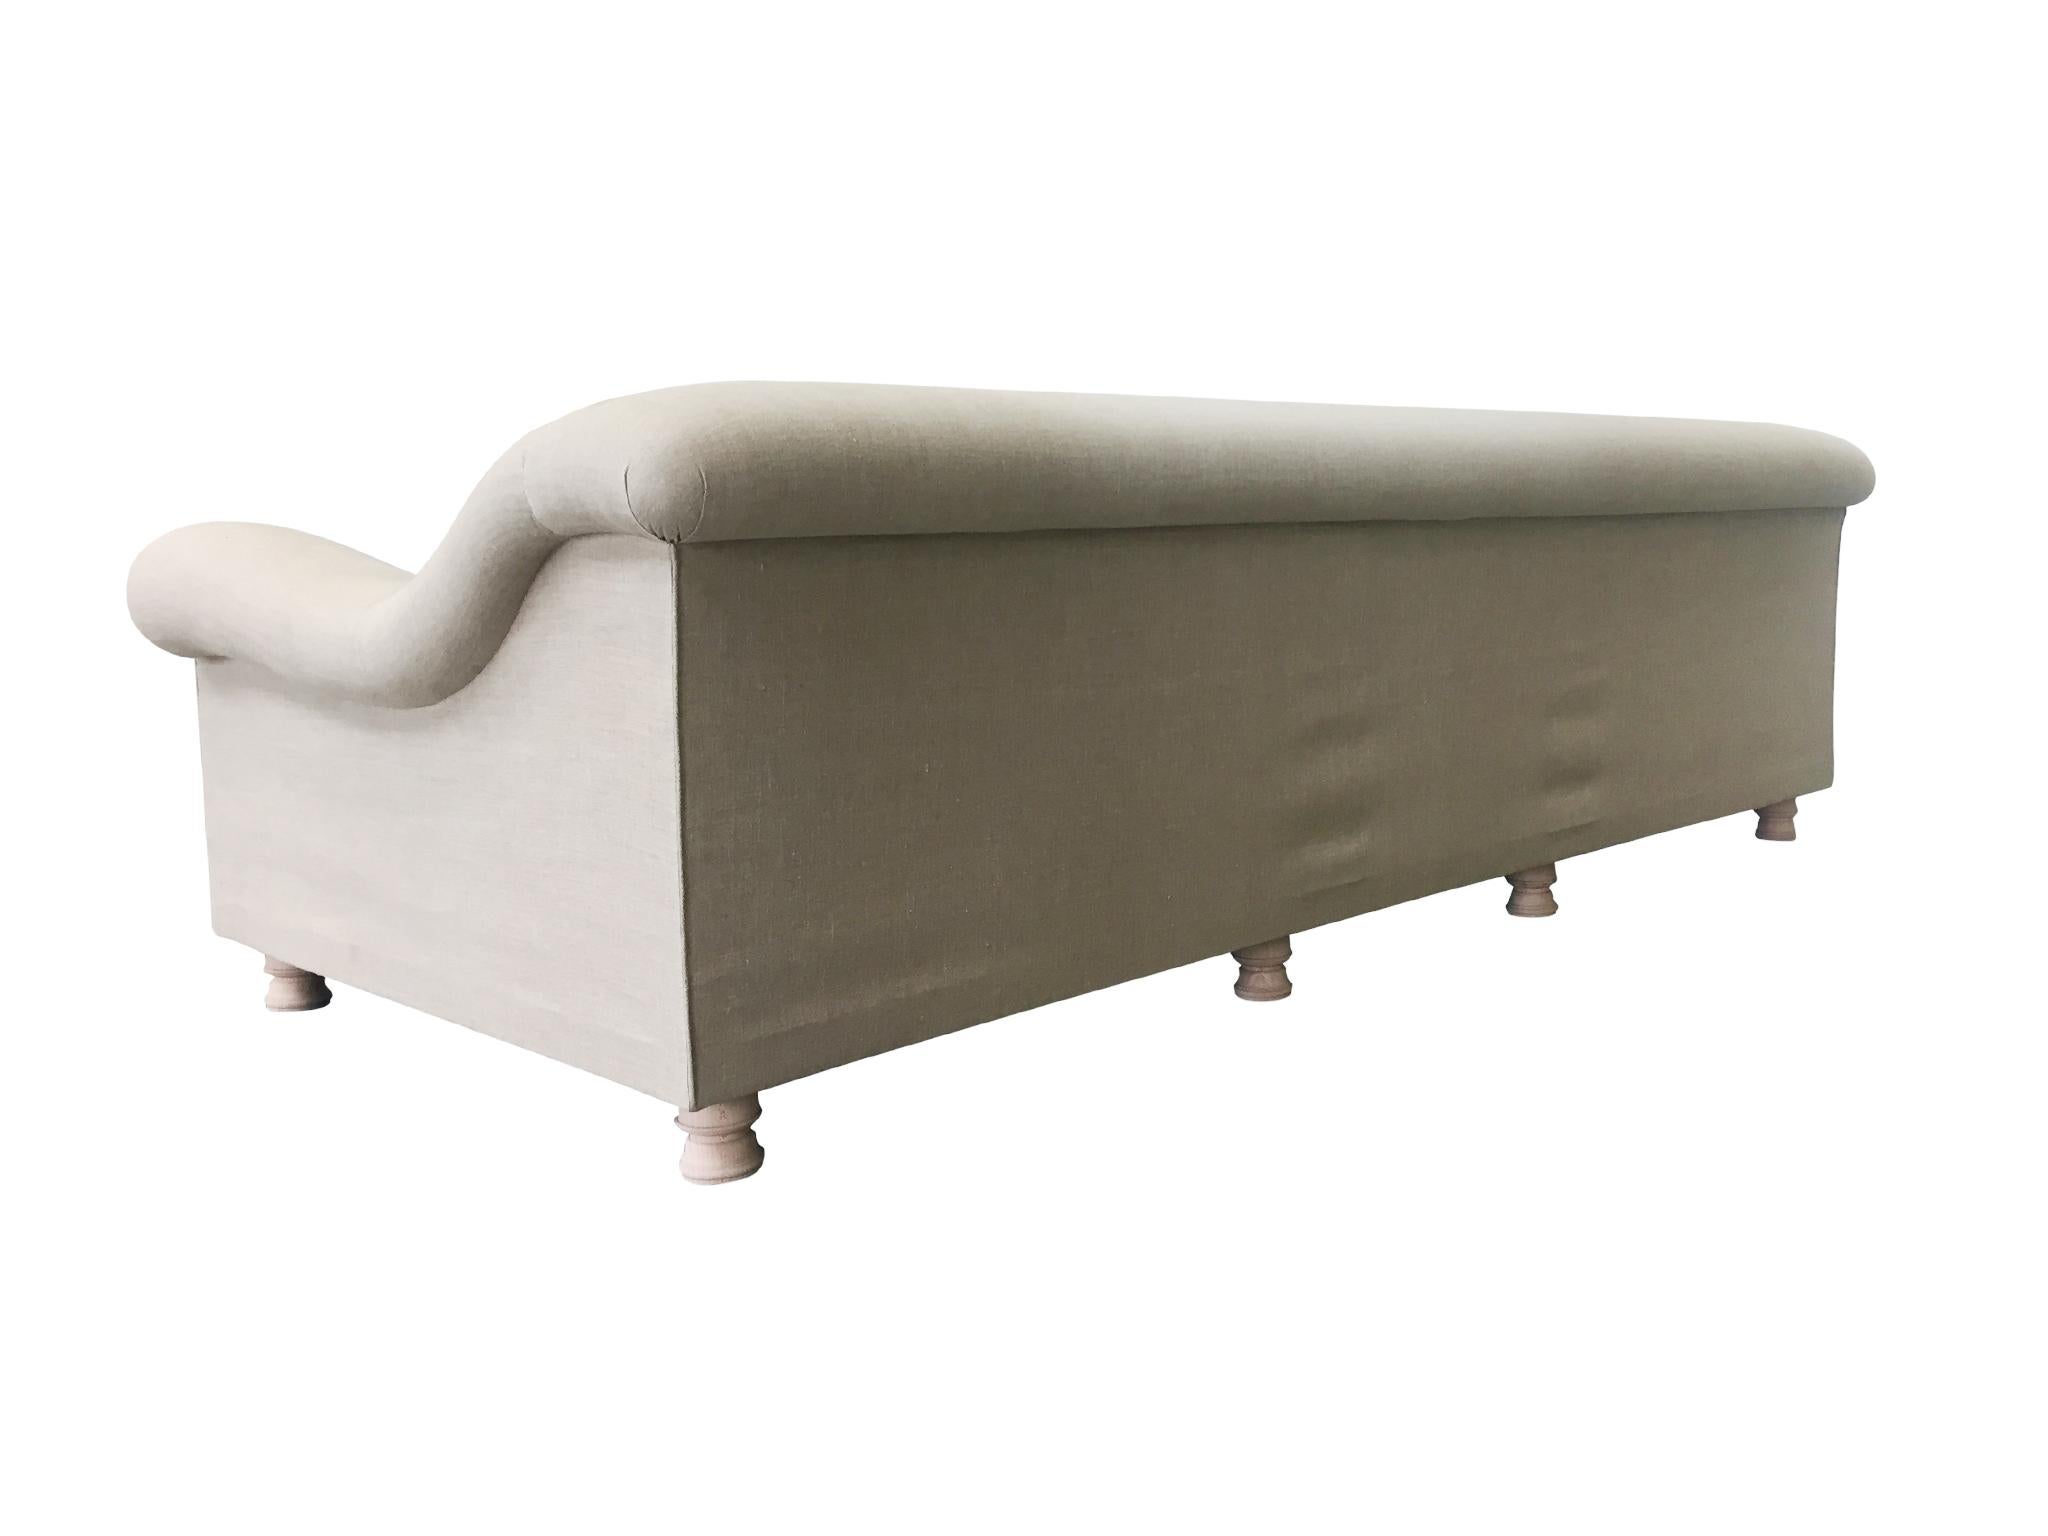 Contemporary Axel Vervoordt Custom Sofa in Belgian Linen